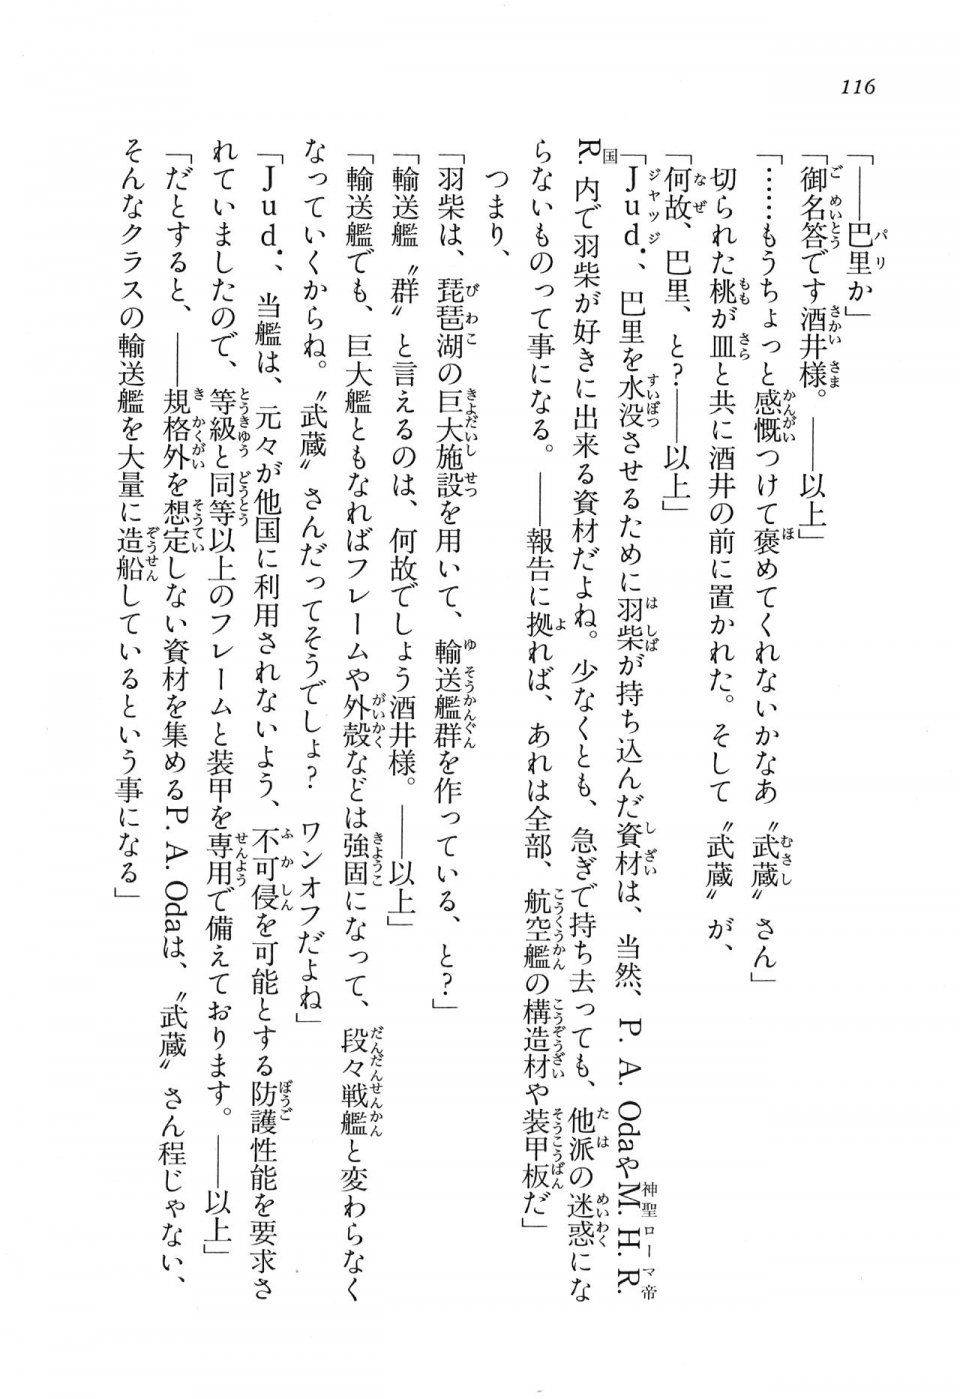 Kyoukai Senjou no Horizon LN Vol 16(7A) - Photo #116